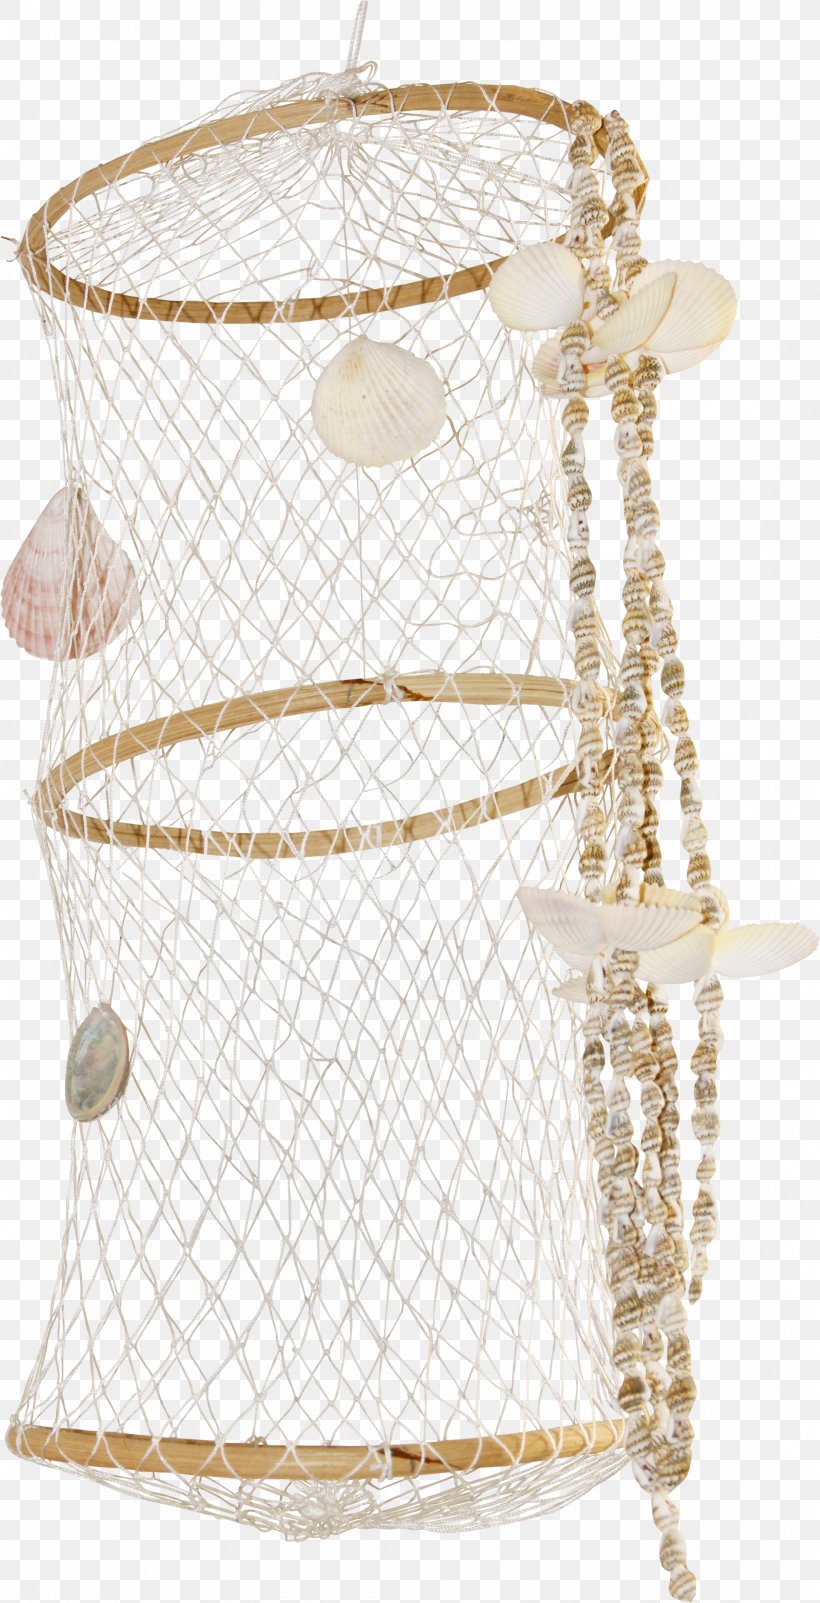 Fishing Net Fisherman Clip Art, PNG, 2183x4268px, Fishing Net, Angling, Chain, Fisherman, Fishing Download Free